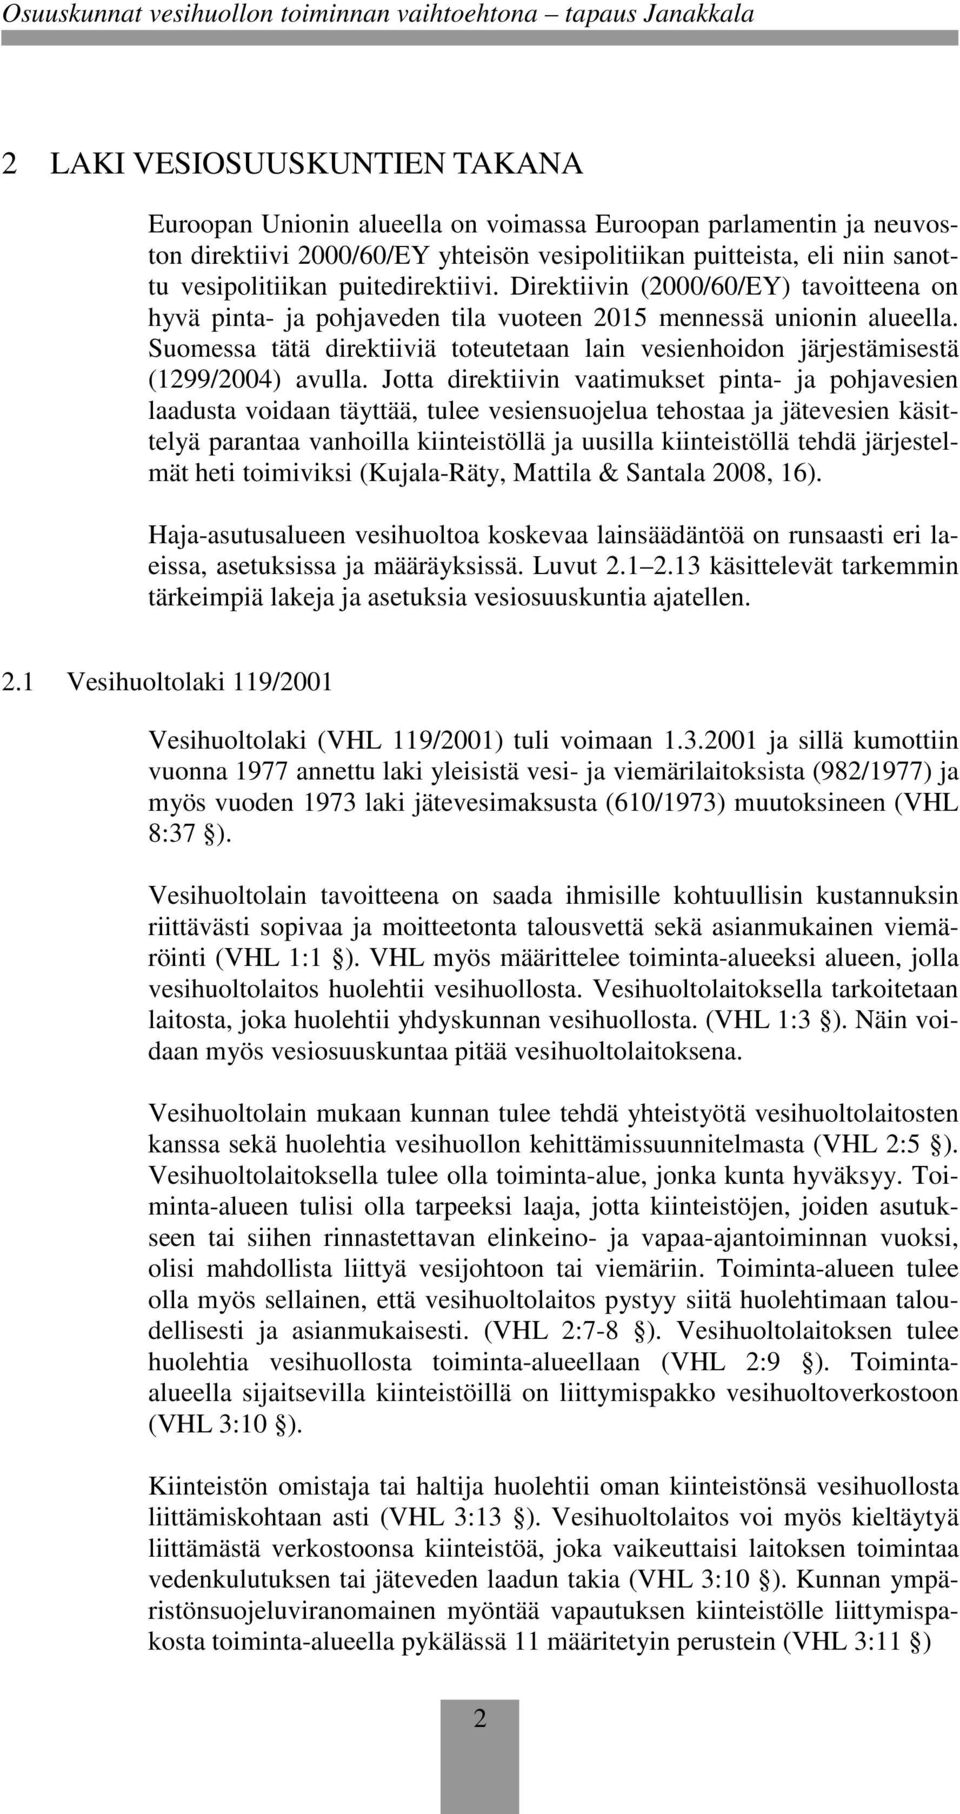 Suomessa tätä direktiiviä toteutetaan lain vesienhoidon järjestämisestä (1299/2004) avulla.